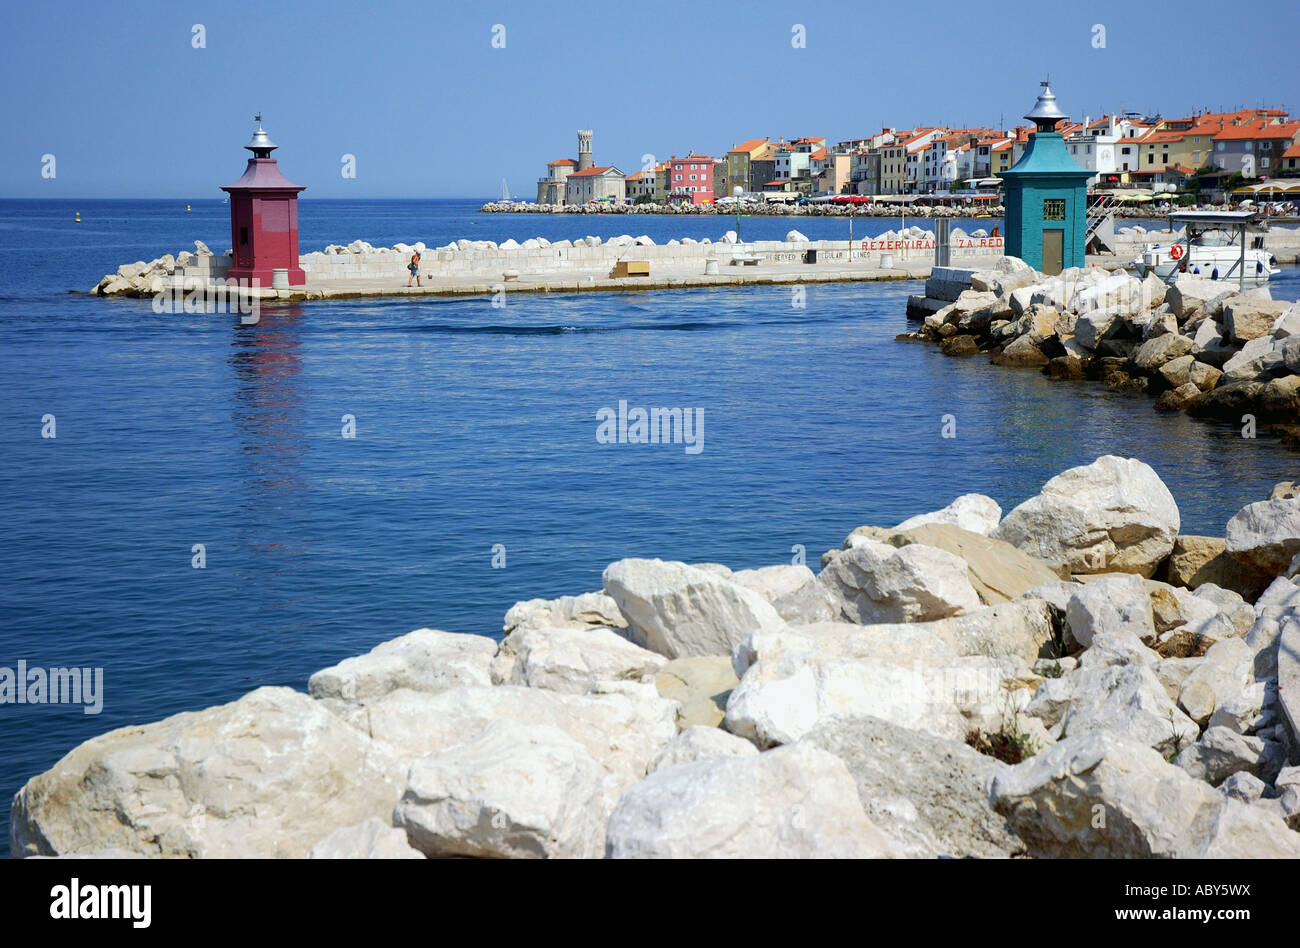 Vue sur le port de Piran, Slovénie Primorska Istria ancien ex-Yougoslavie Pirano Istra Istrie slovène à l'est l'Europe de l'Est Banque D'Images